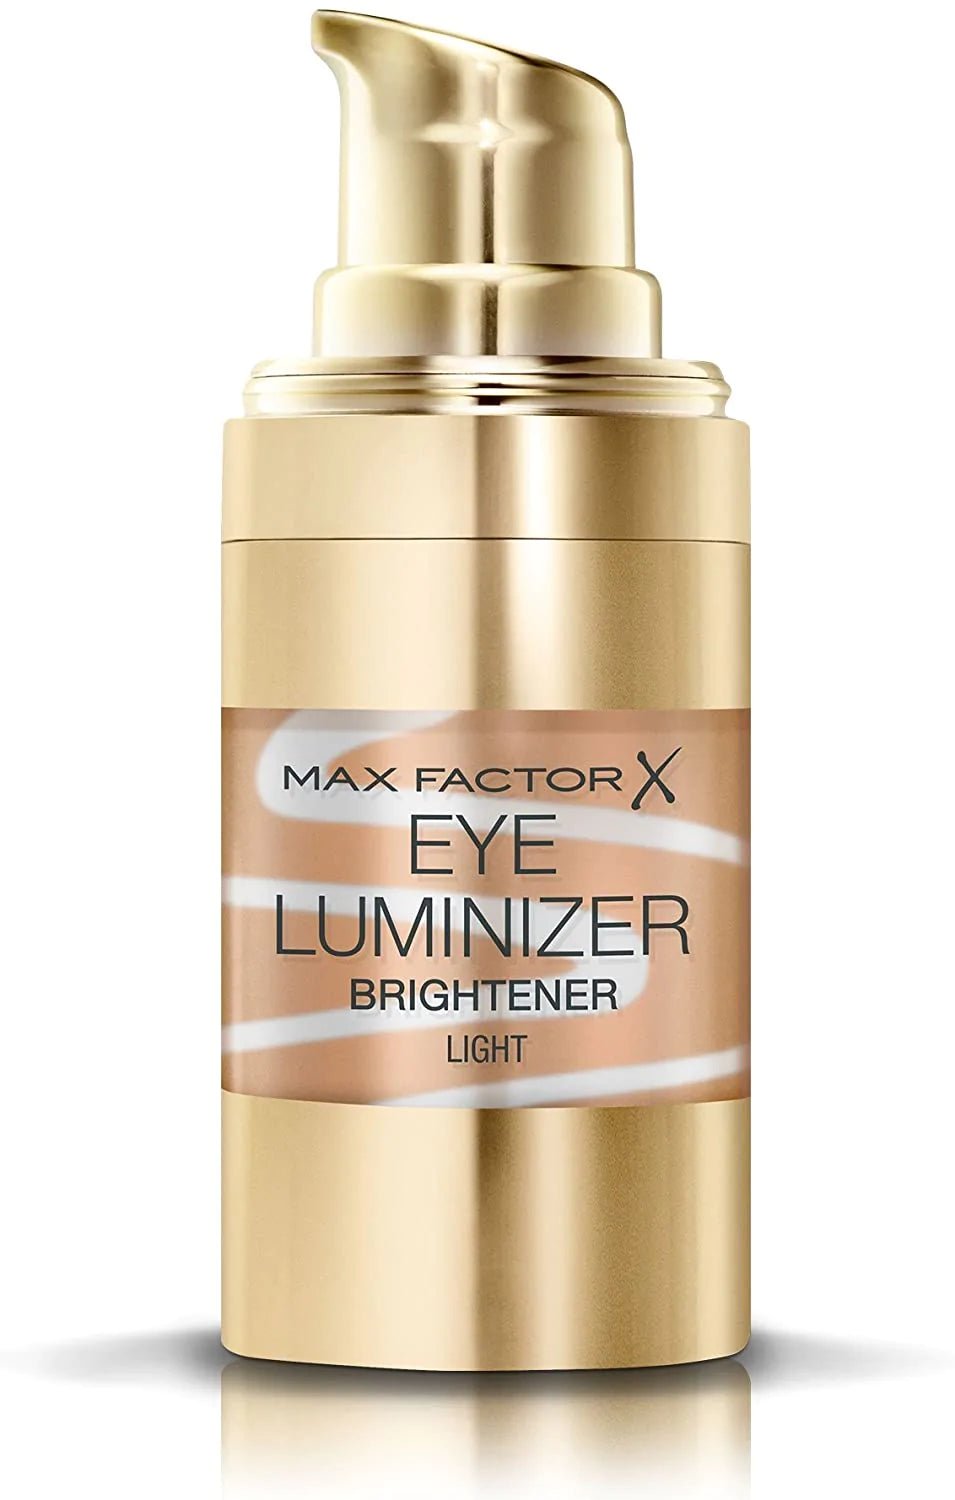 Maxfactor Eye Luminizer Brightener Concealer Light - AllurebeautypkMaxfactor Eye Luminizer Brightener Concealer Light